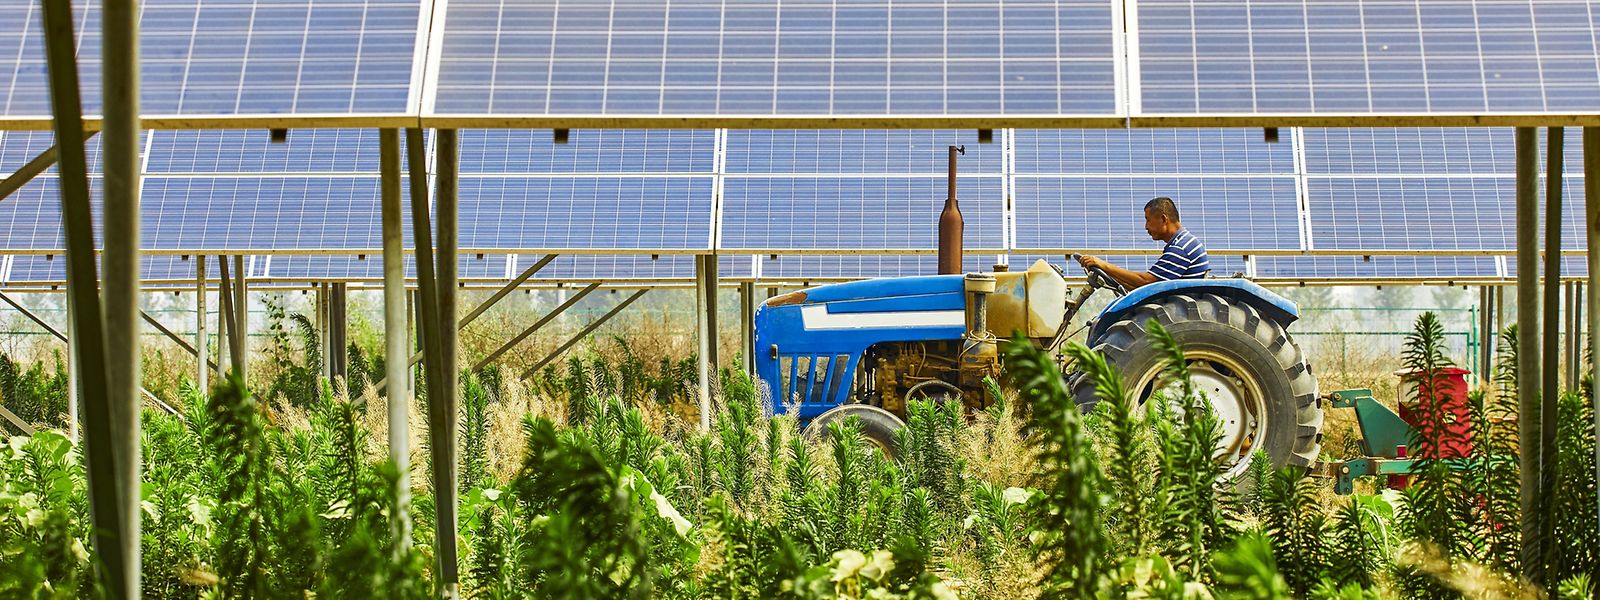 In Zukunft werden landwirtschaftliche Produktion und Stromerzeugung aus erneuerbaren Quellen häufiger kombiniert werden, sind die Gründer von GPSS überzeugt.